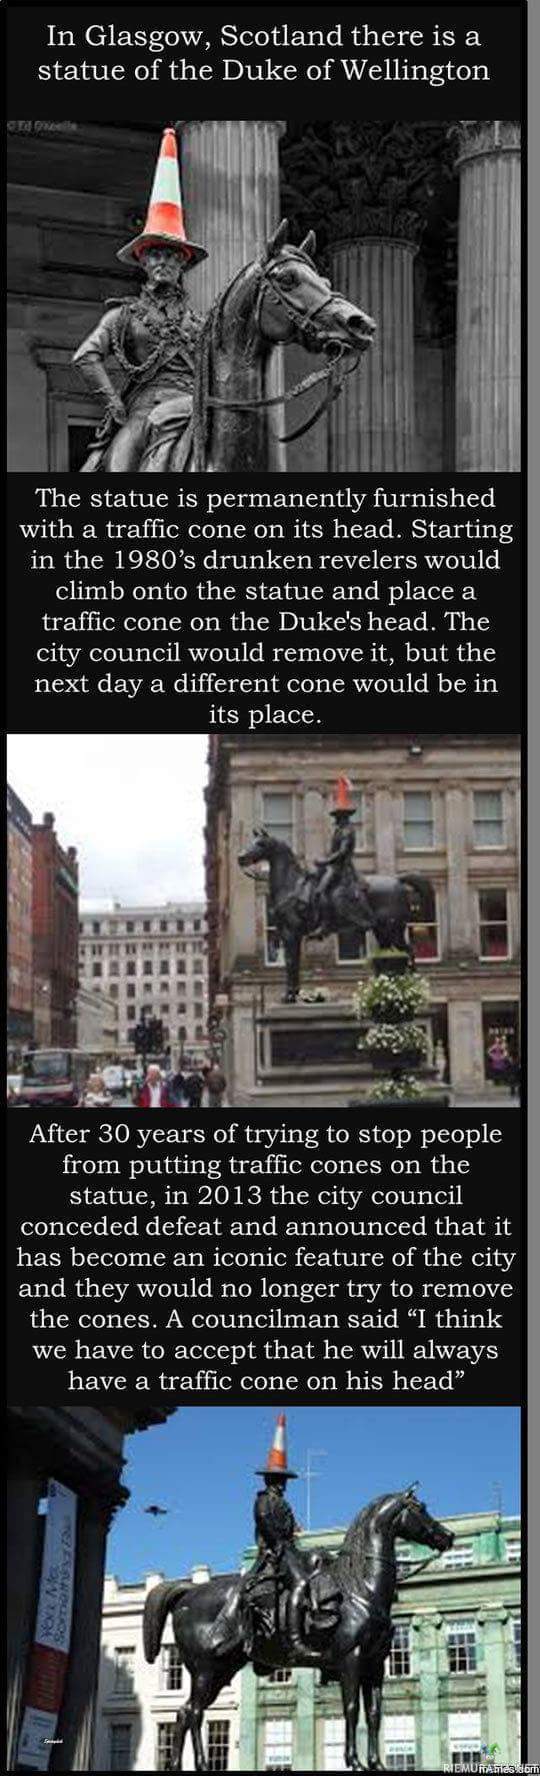 Duke of Wellington - Glasgowssa, Skotlannissa Wellingtonin herttuan patsas on saanut liikennekartion päähänsä jo vuosikymmenten ajan, viranomaiset eivät enää jaksa edes vaivautua yrittämään sen poistamista patsaan päästä sillä se se ilmestyisi siihen takaisin alta aikayksikön